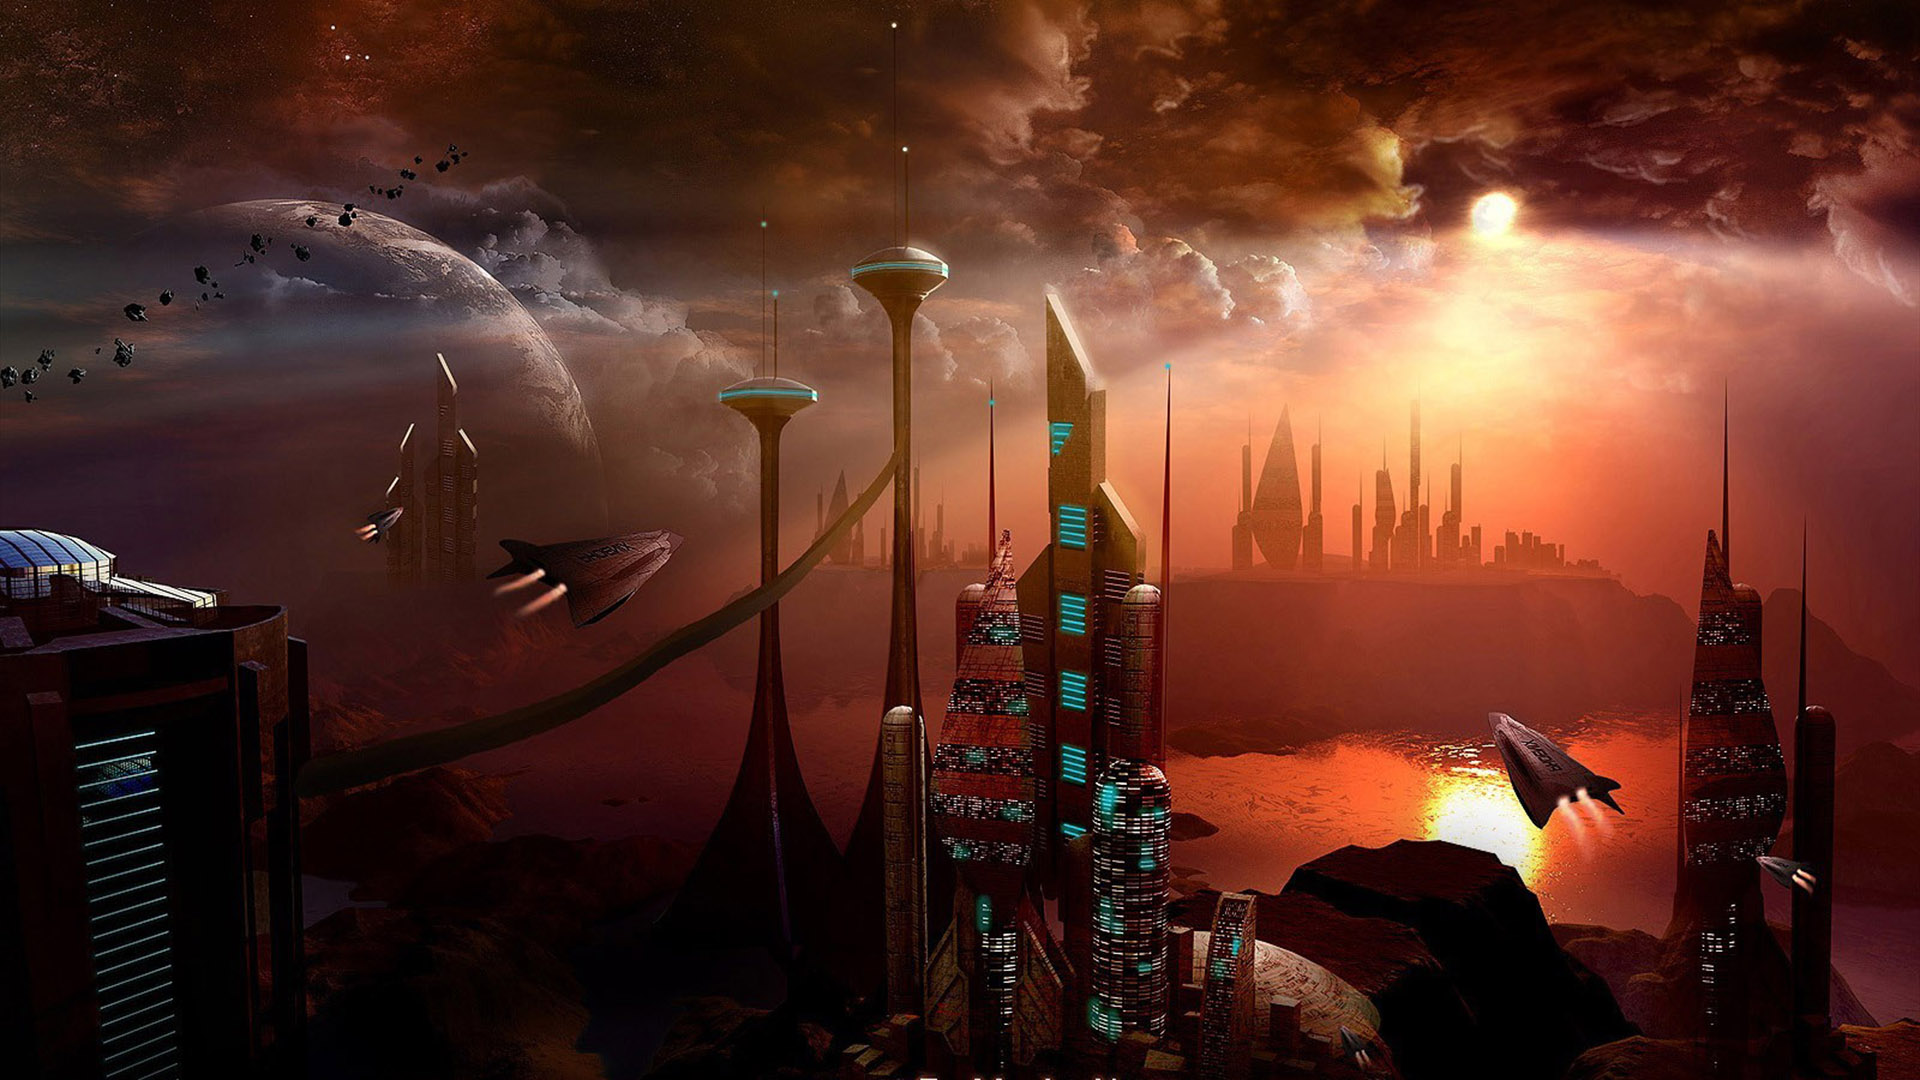 Beautiful Fantasy Future Space Desktop Wallpaper - Alien Battle Fought Over Germany - HD Wallpaper 